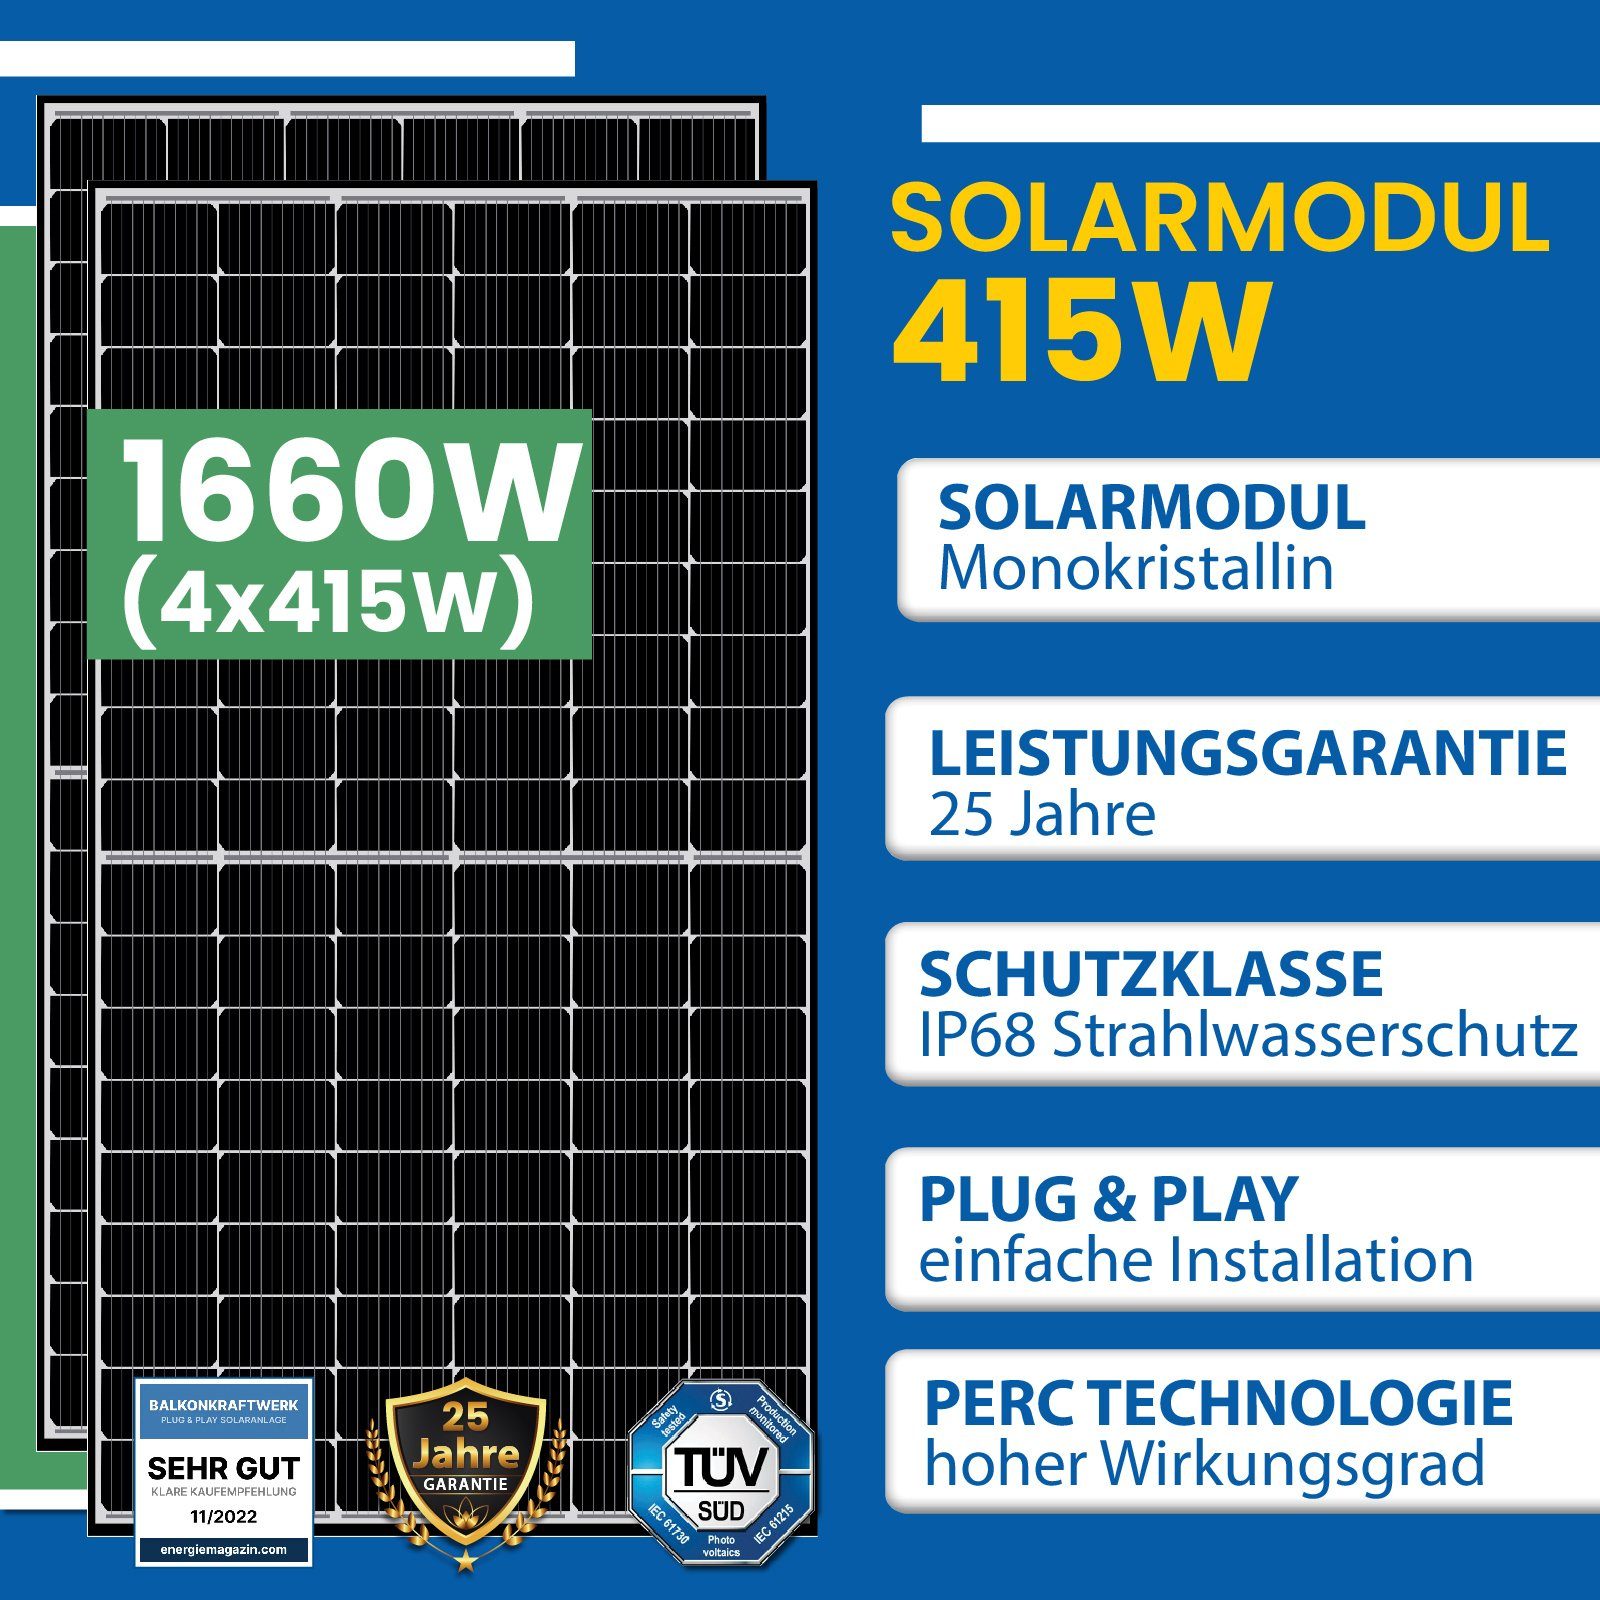 EPP.Solar Solaranlage 1660W PV-Montage Hoymiles Stockschrauben, Photovoltaik Wechselrichter, DTU-WLite-S Balkonkraftwerk, HMS-1600-4T